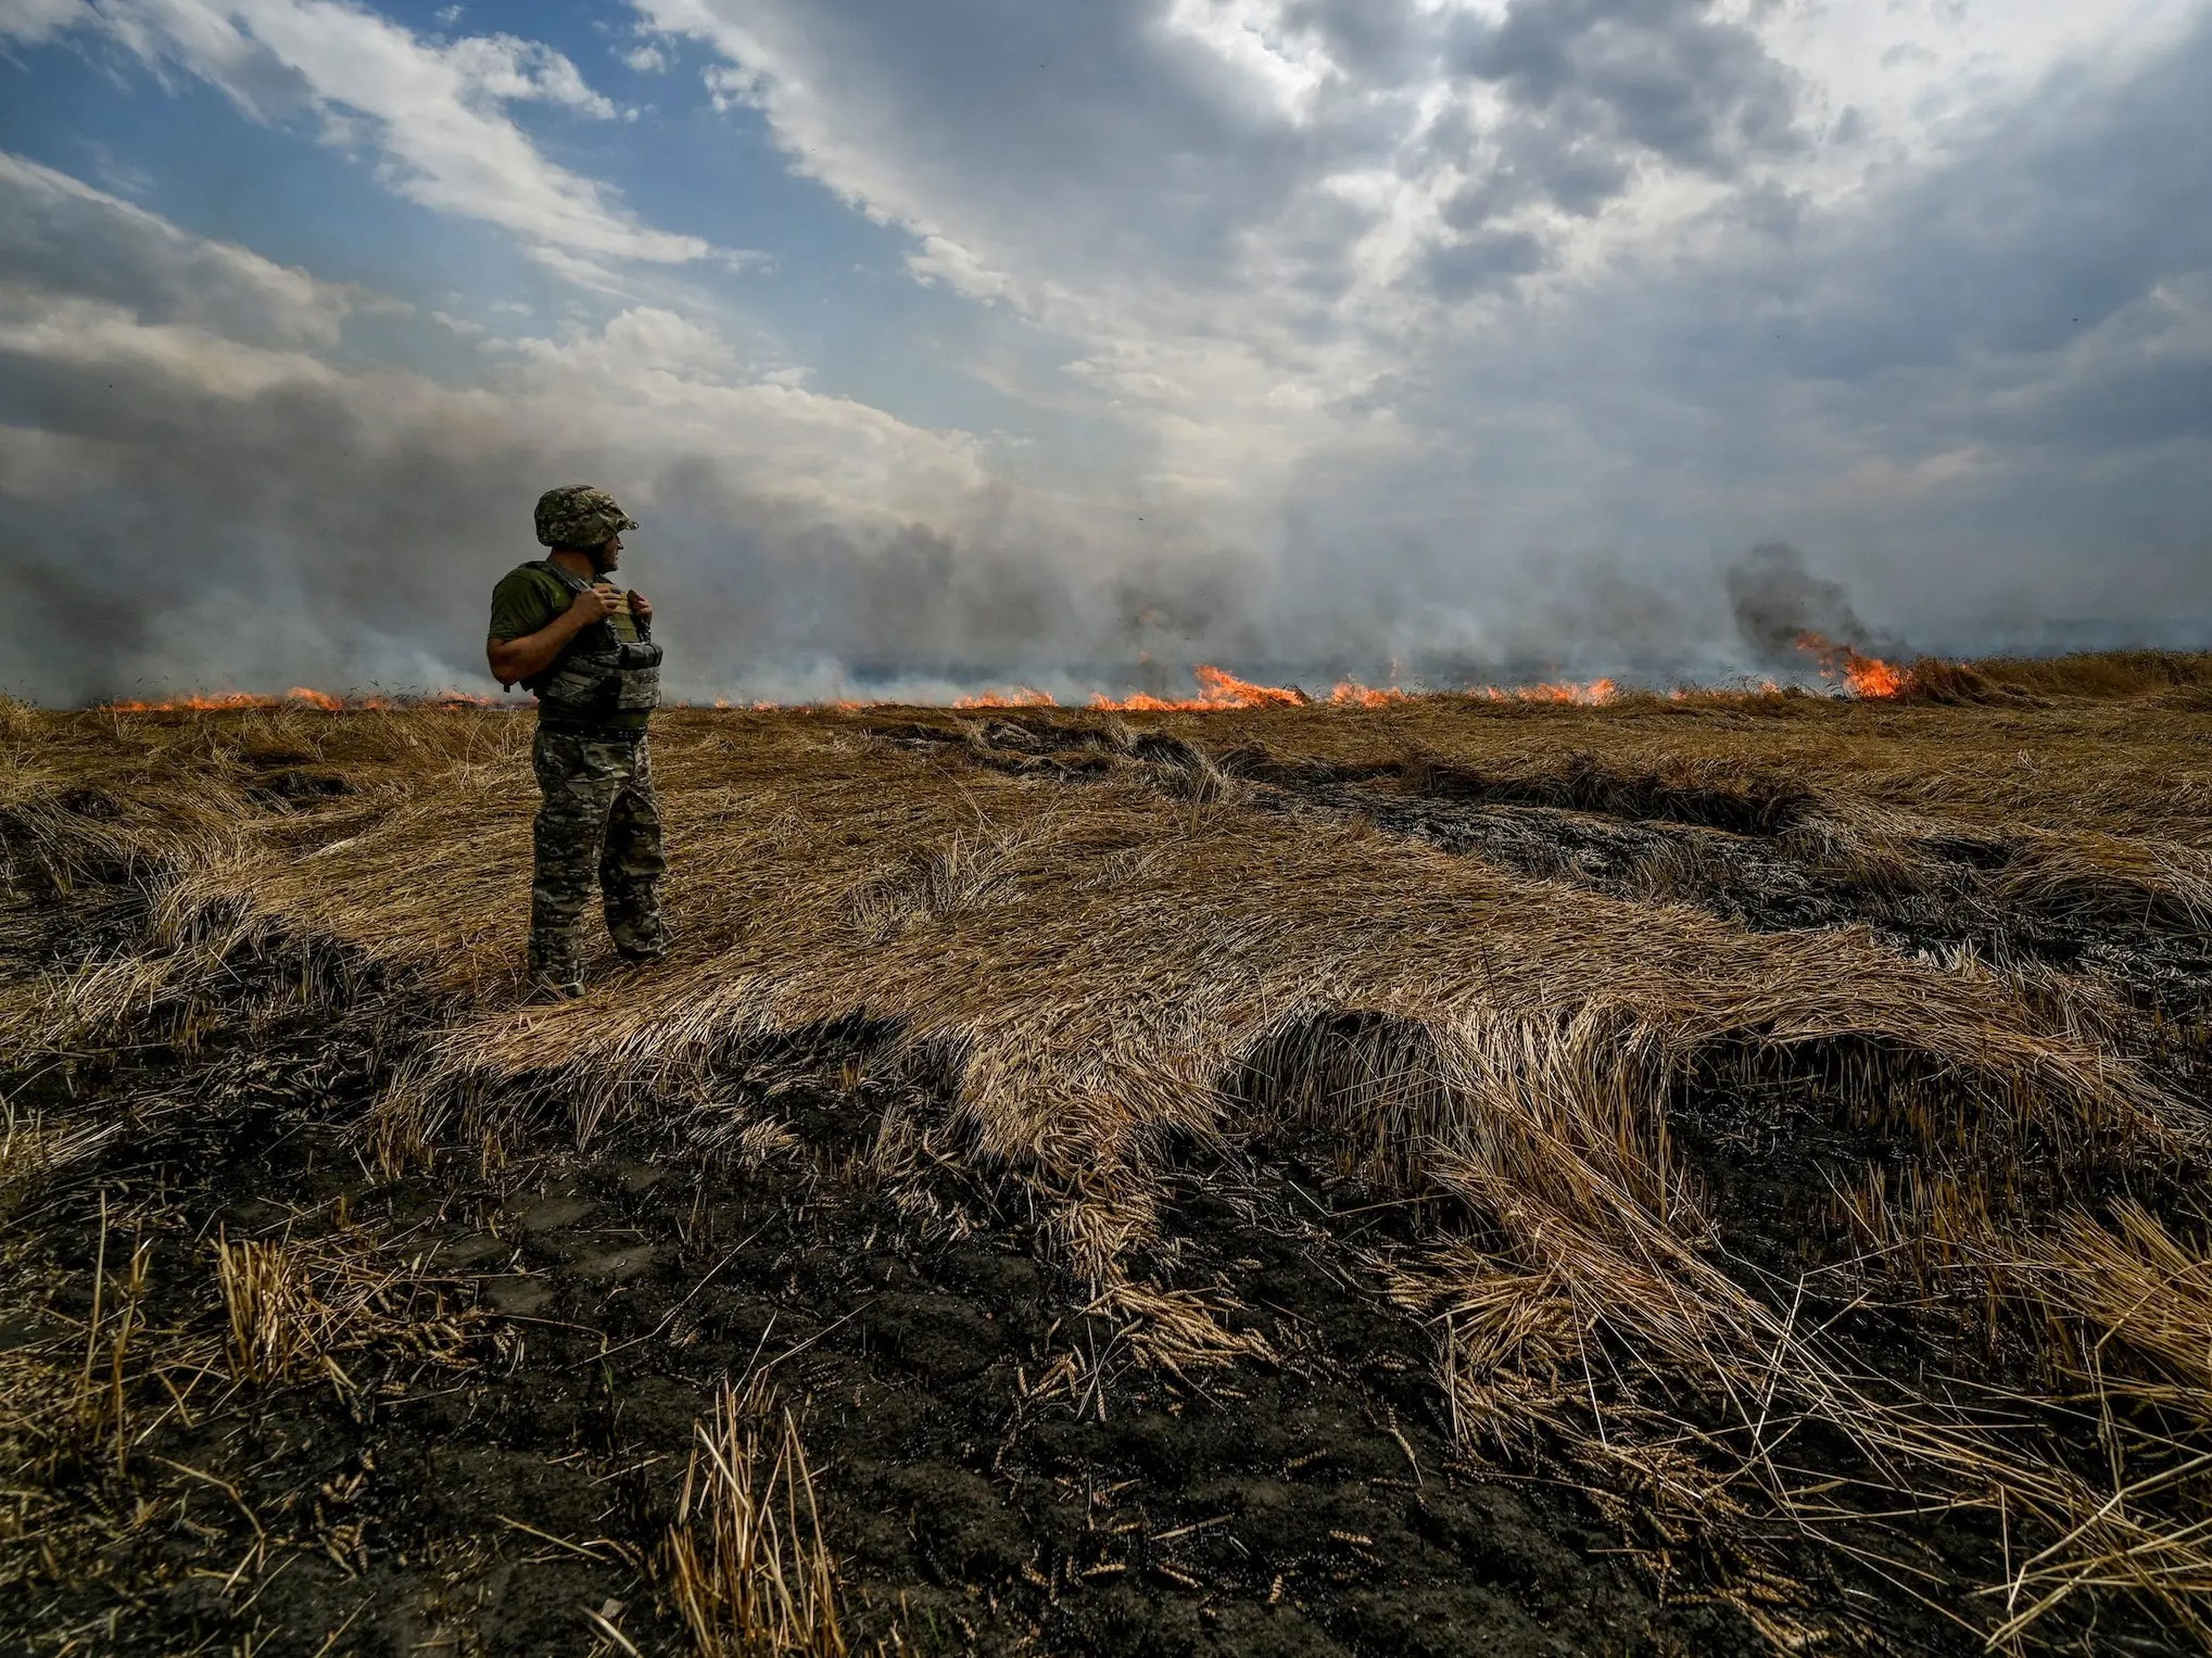 Un miembro del servicio ucraniano sobre un campo de trigo en llamas cerca de la línea del frente, en la frontera entre las regiones de Zaporizhzhia y Donetsk, durante el ataque de Rusia a Ucrania el 17 de julio.